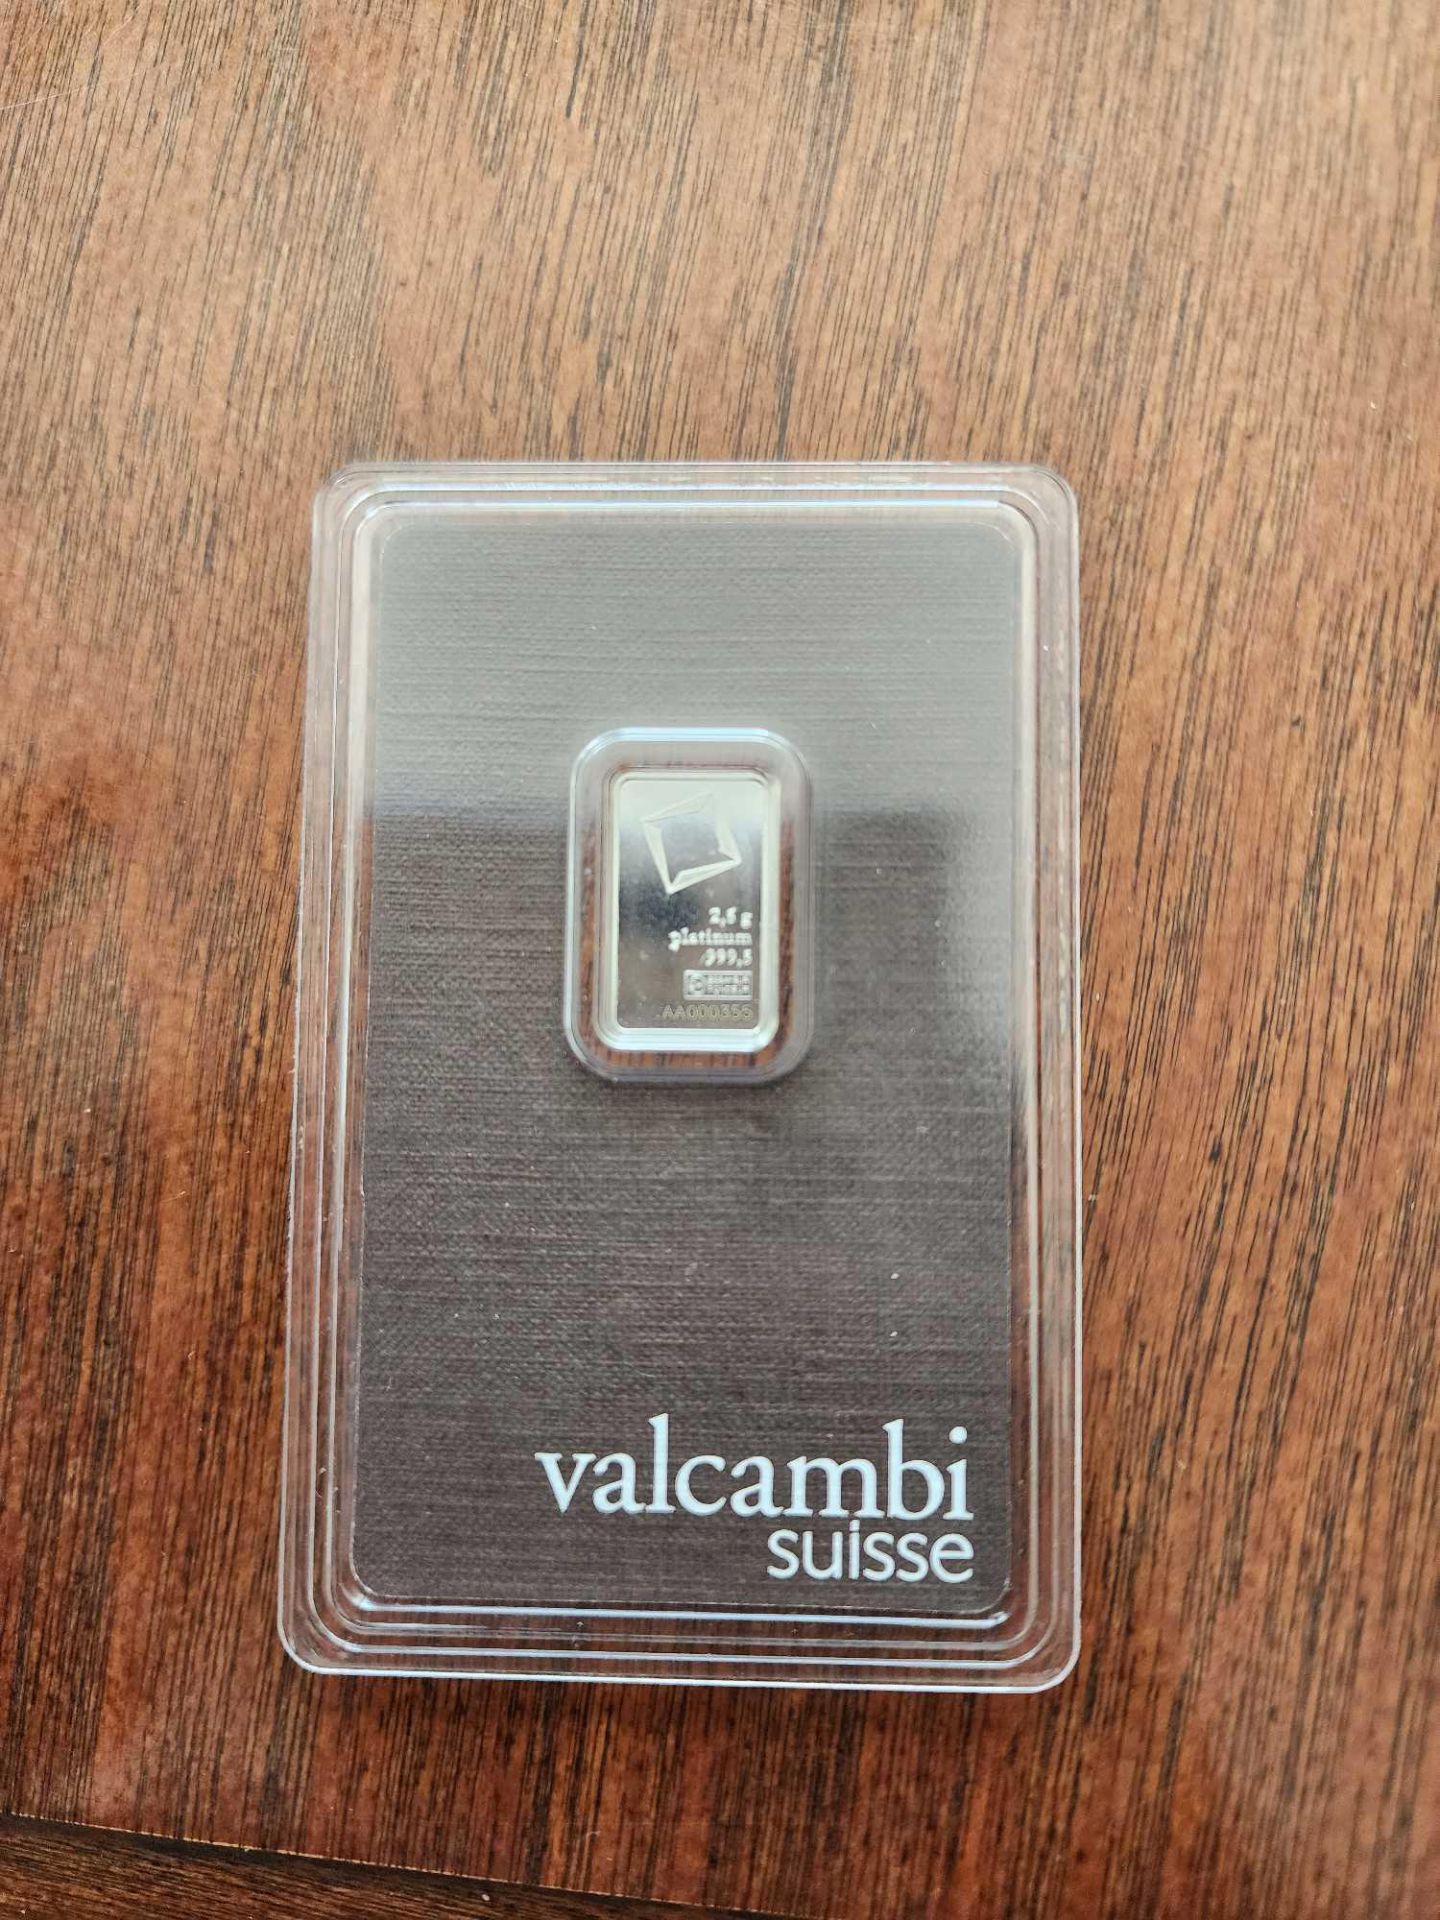 Valcambi Suisse 2.5 gram Platinum Bar